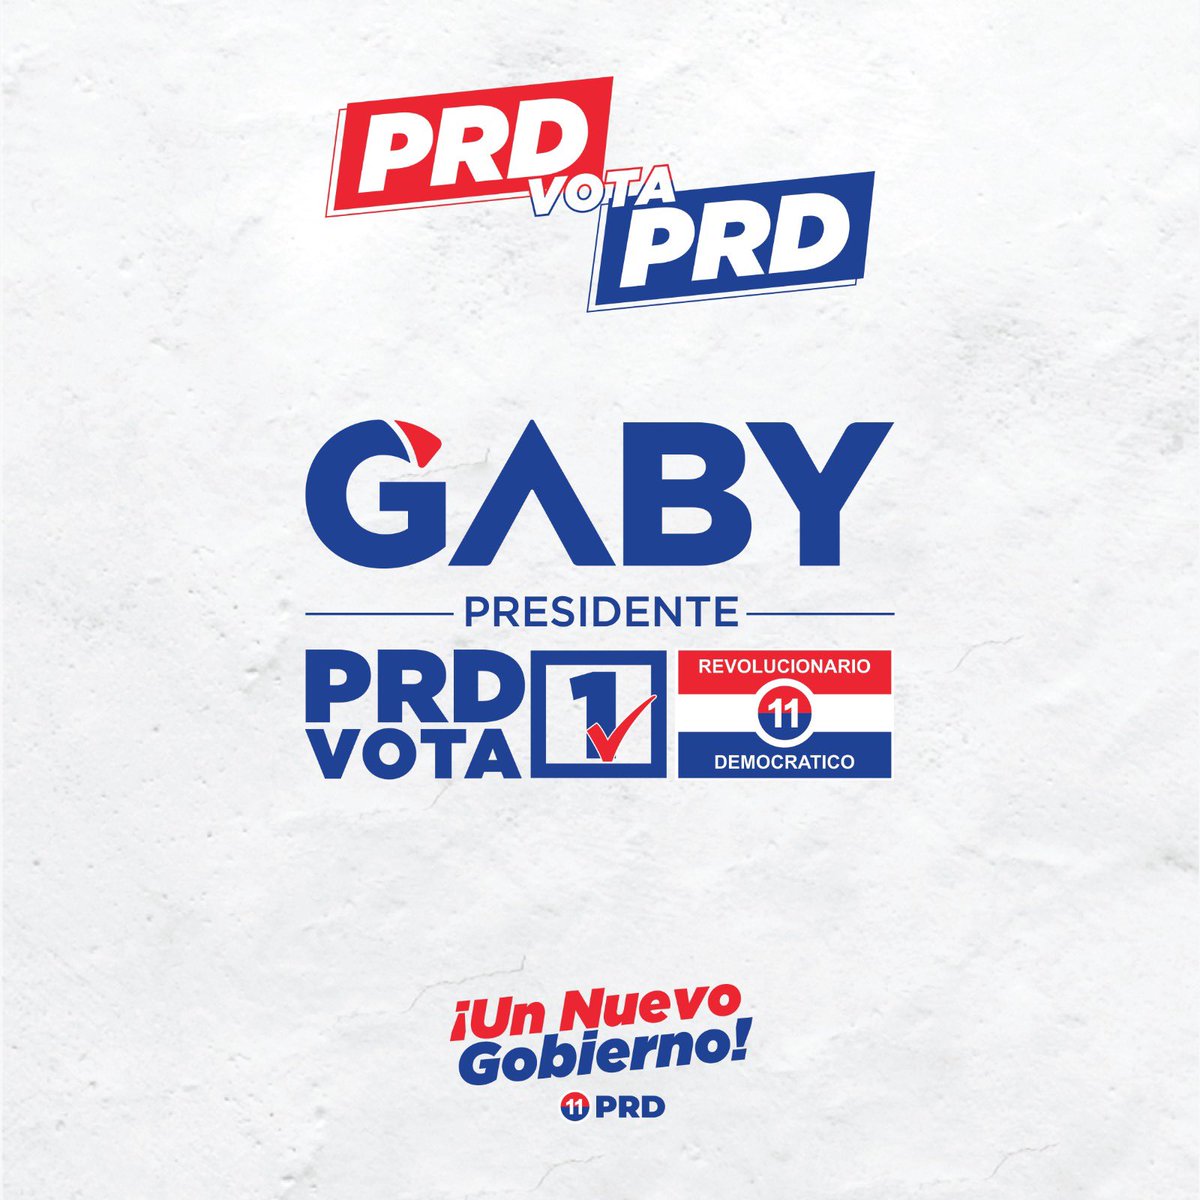 Bocas del Toro, estos son tus candidatos a Diputados. PRD vota PRD #1 #UnNuevoGobiernoPRD